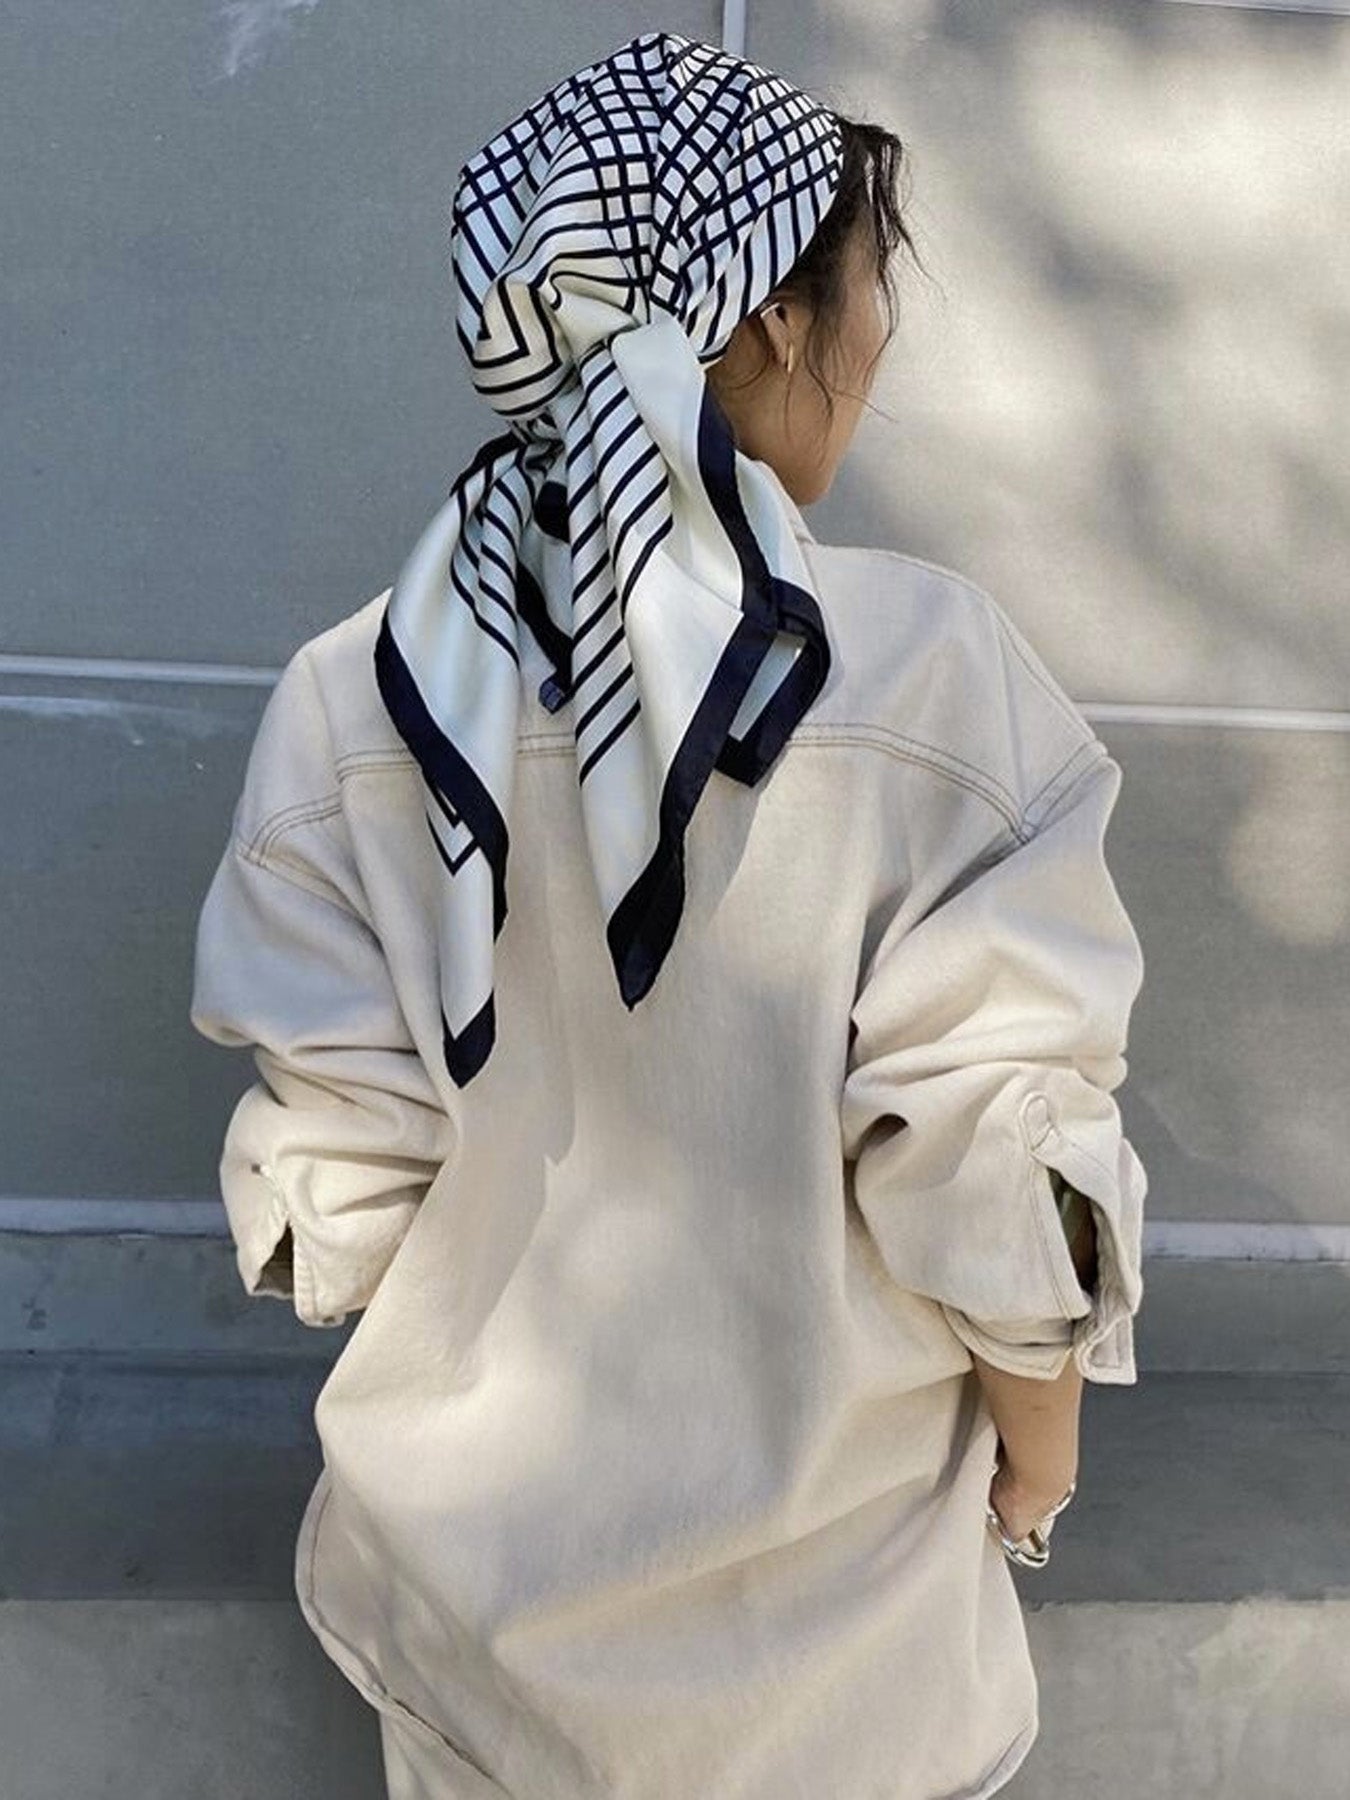 AENEIS Liberté silk scarf Off White